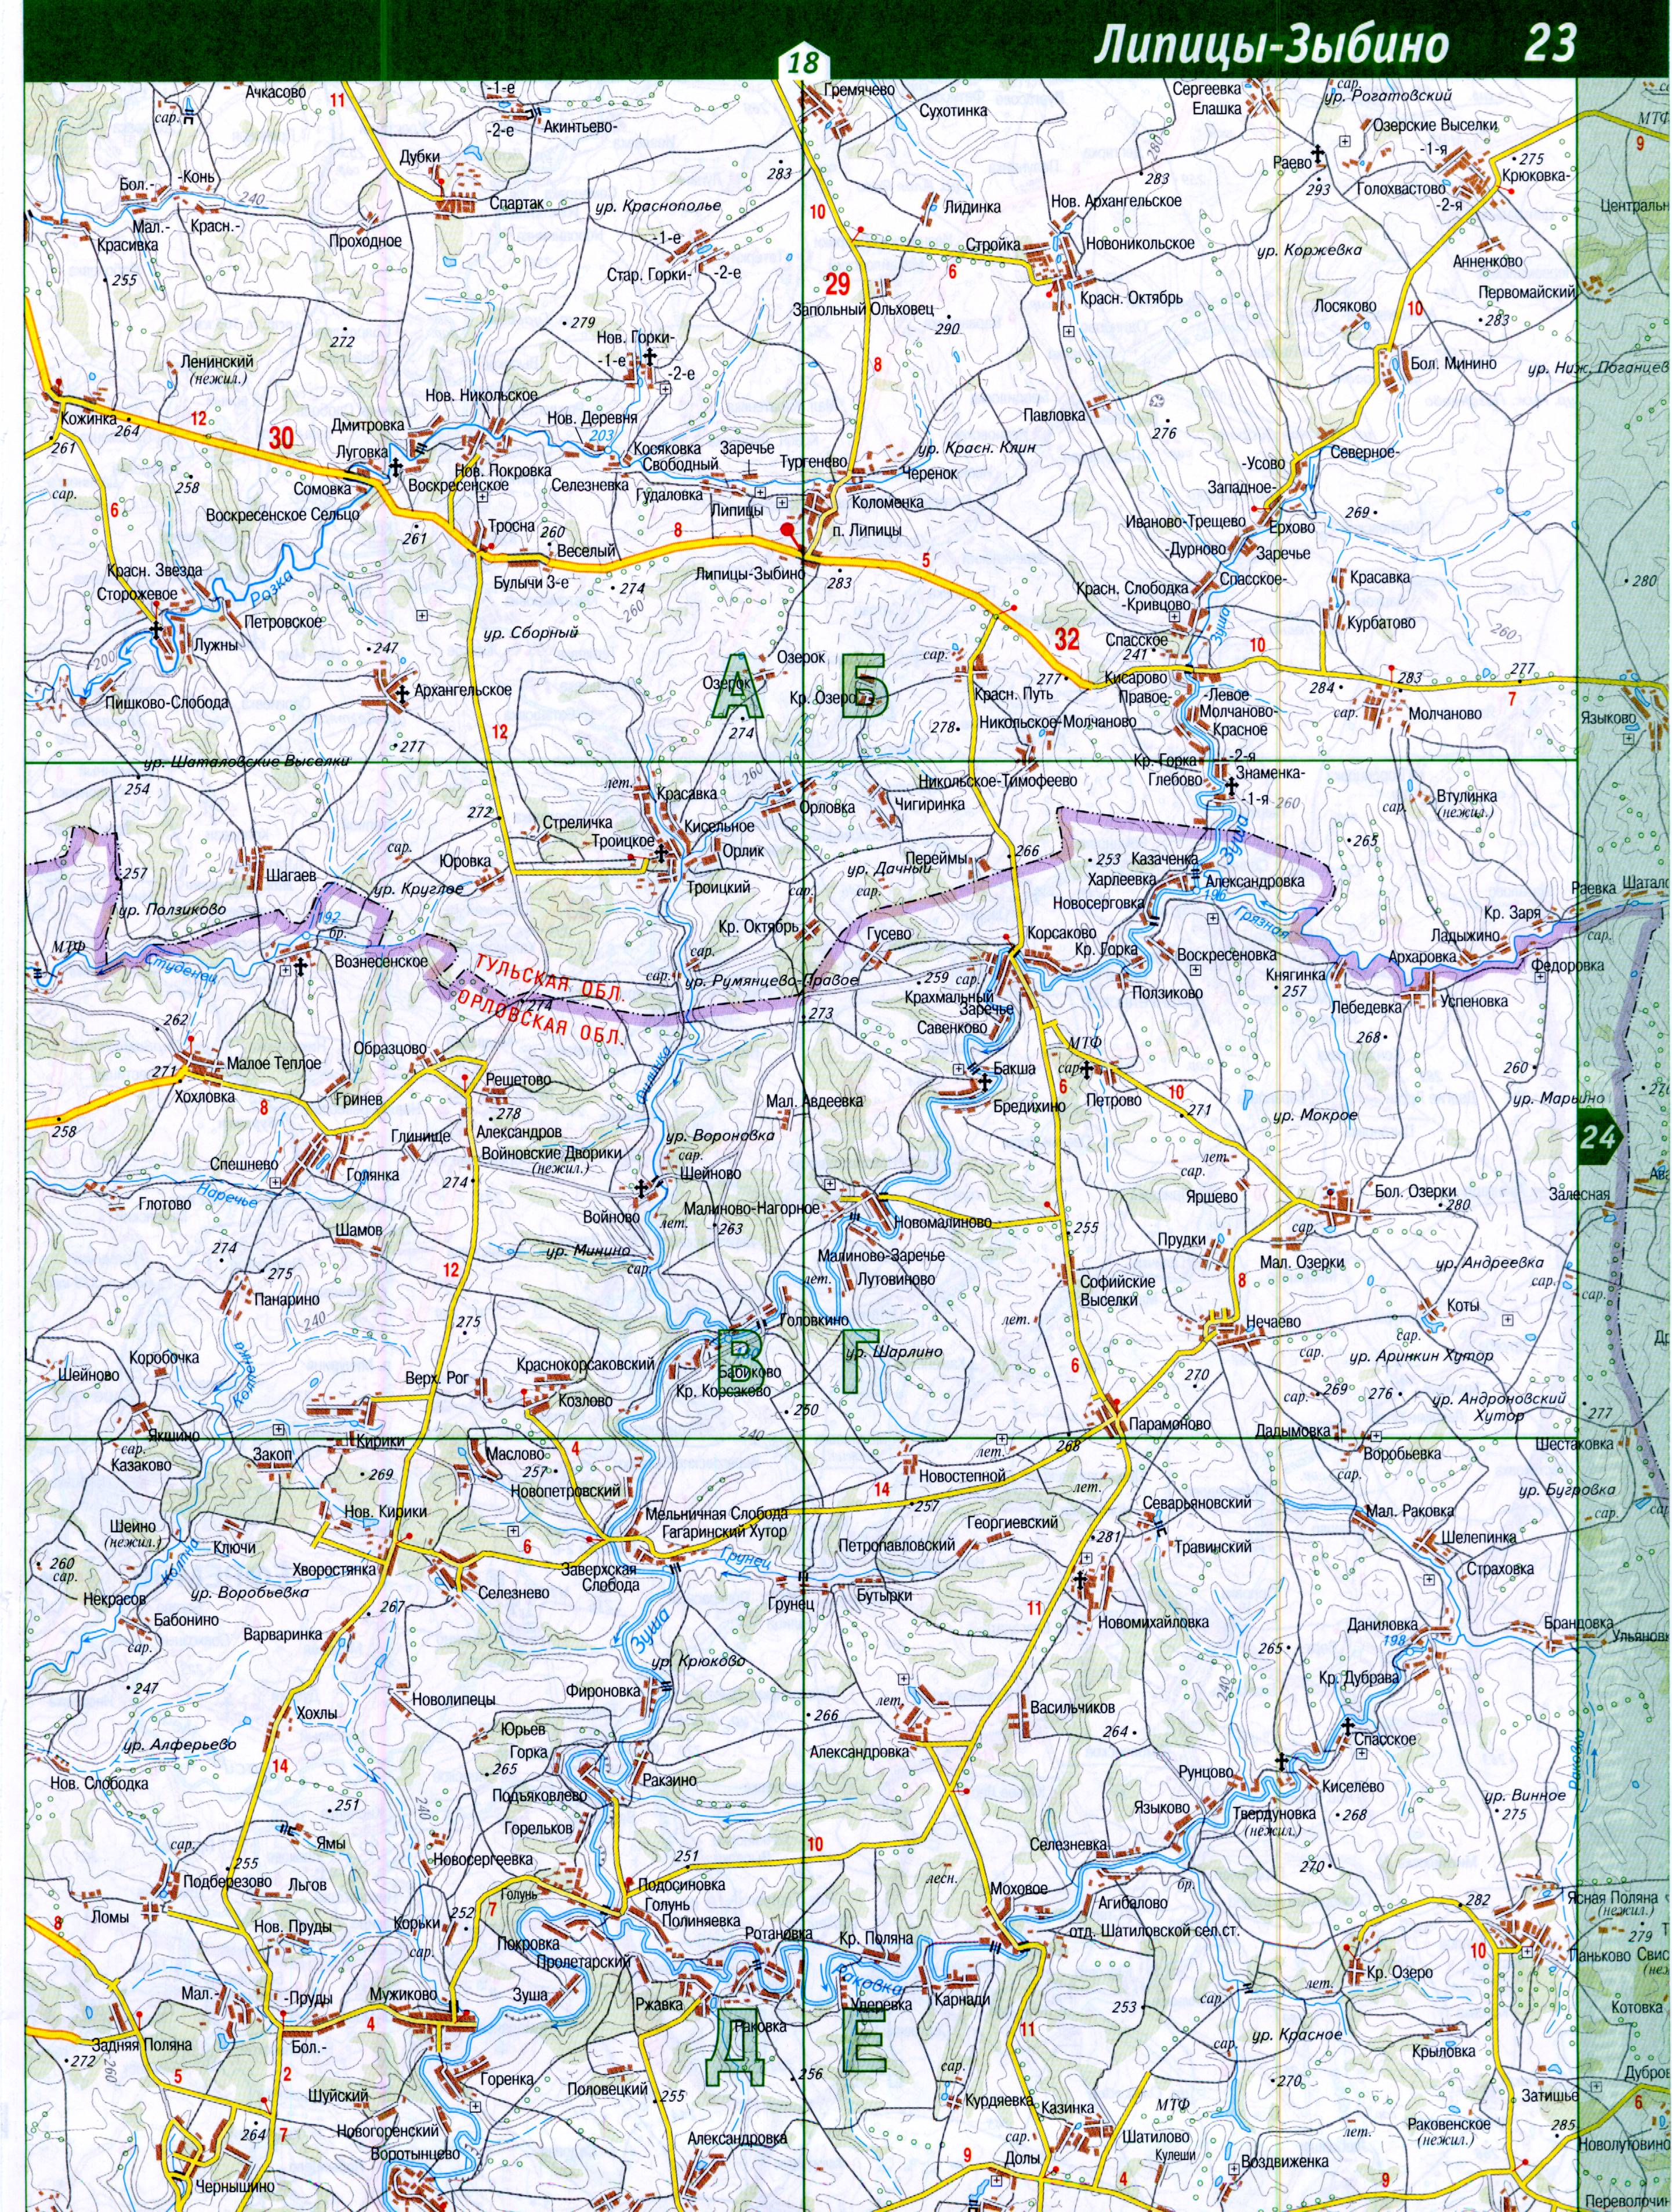 Карта Тульской области топографическая. Подробная топографическая карта Тульской области масштаба 1см:2км, B3 - 